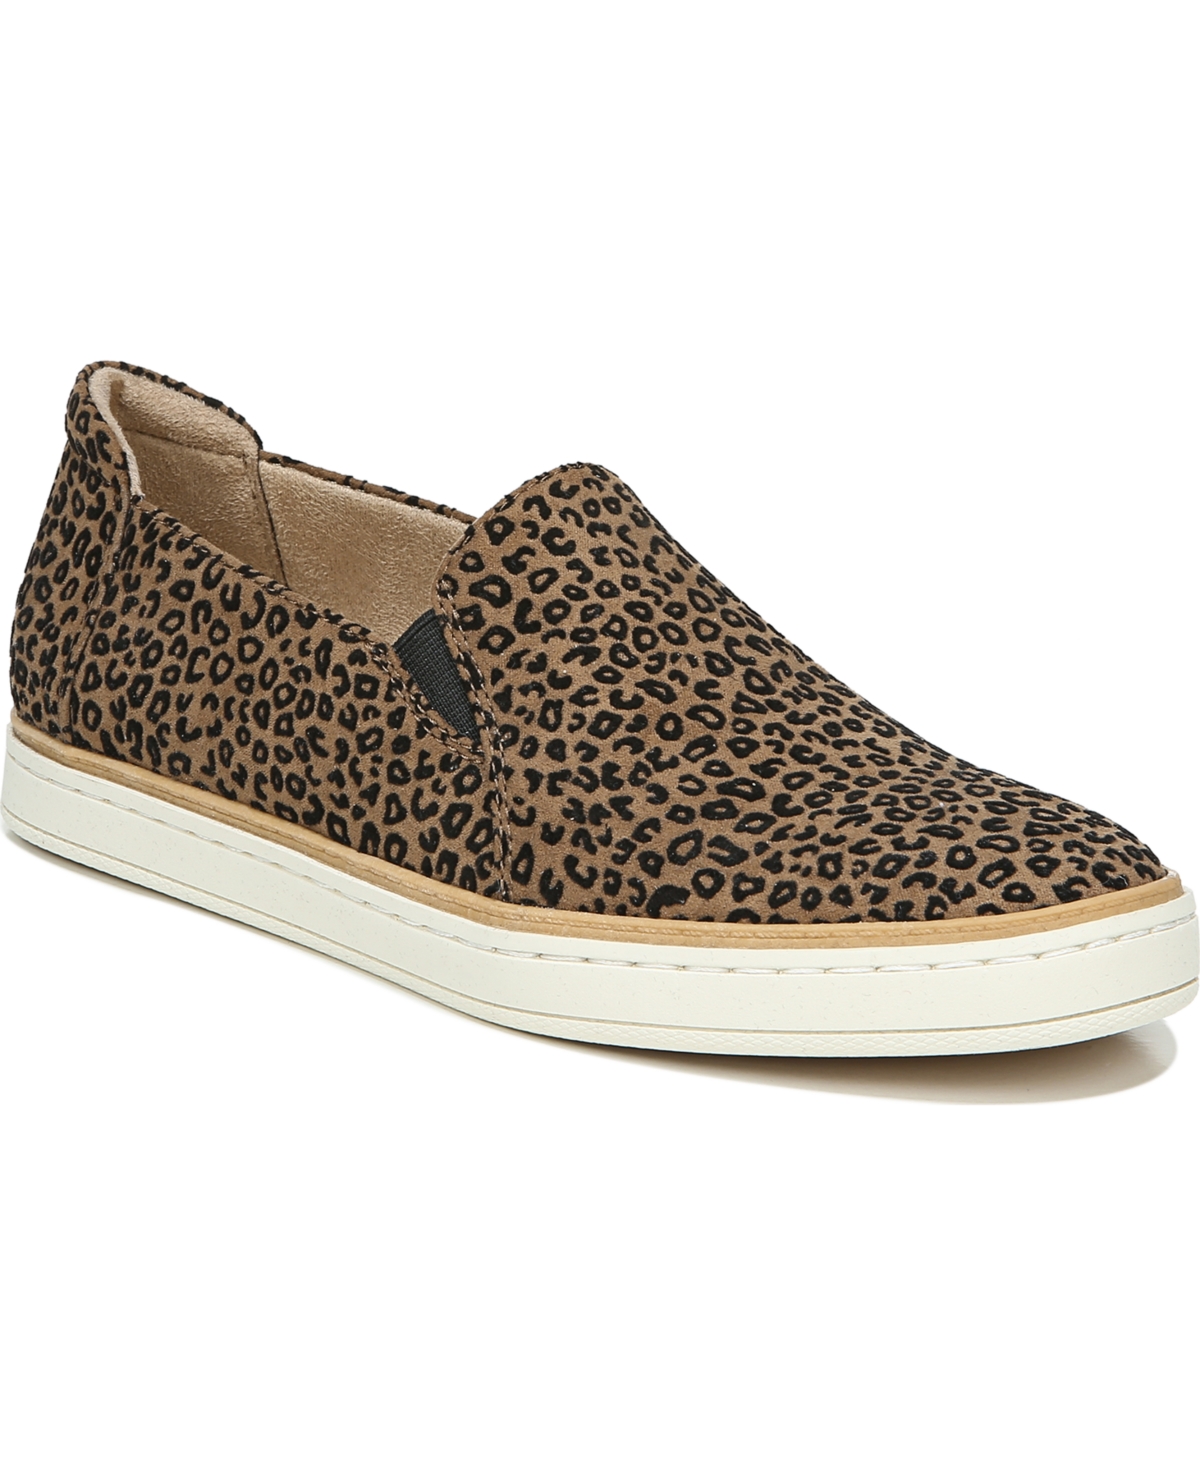 Soul Naturalizer Kemper Slip-ons Women's Shoes In Brown Cheetah Fabric